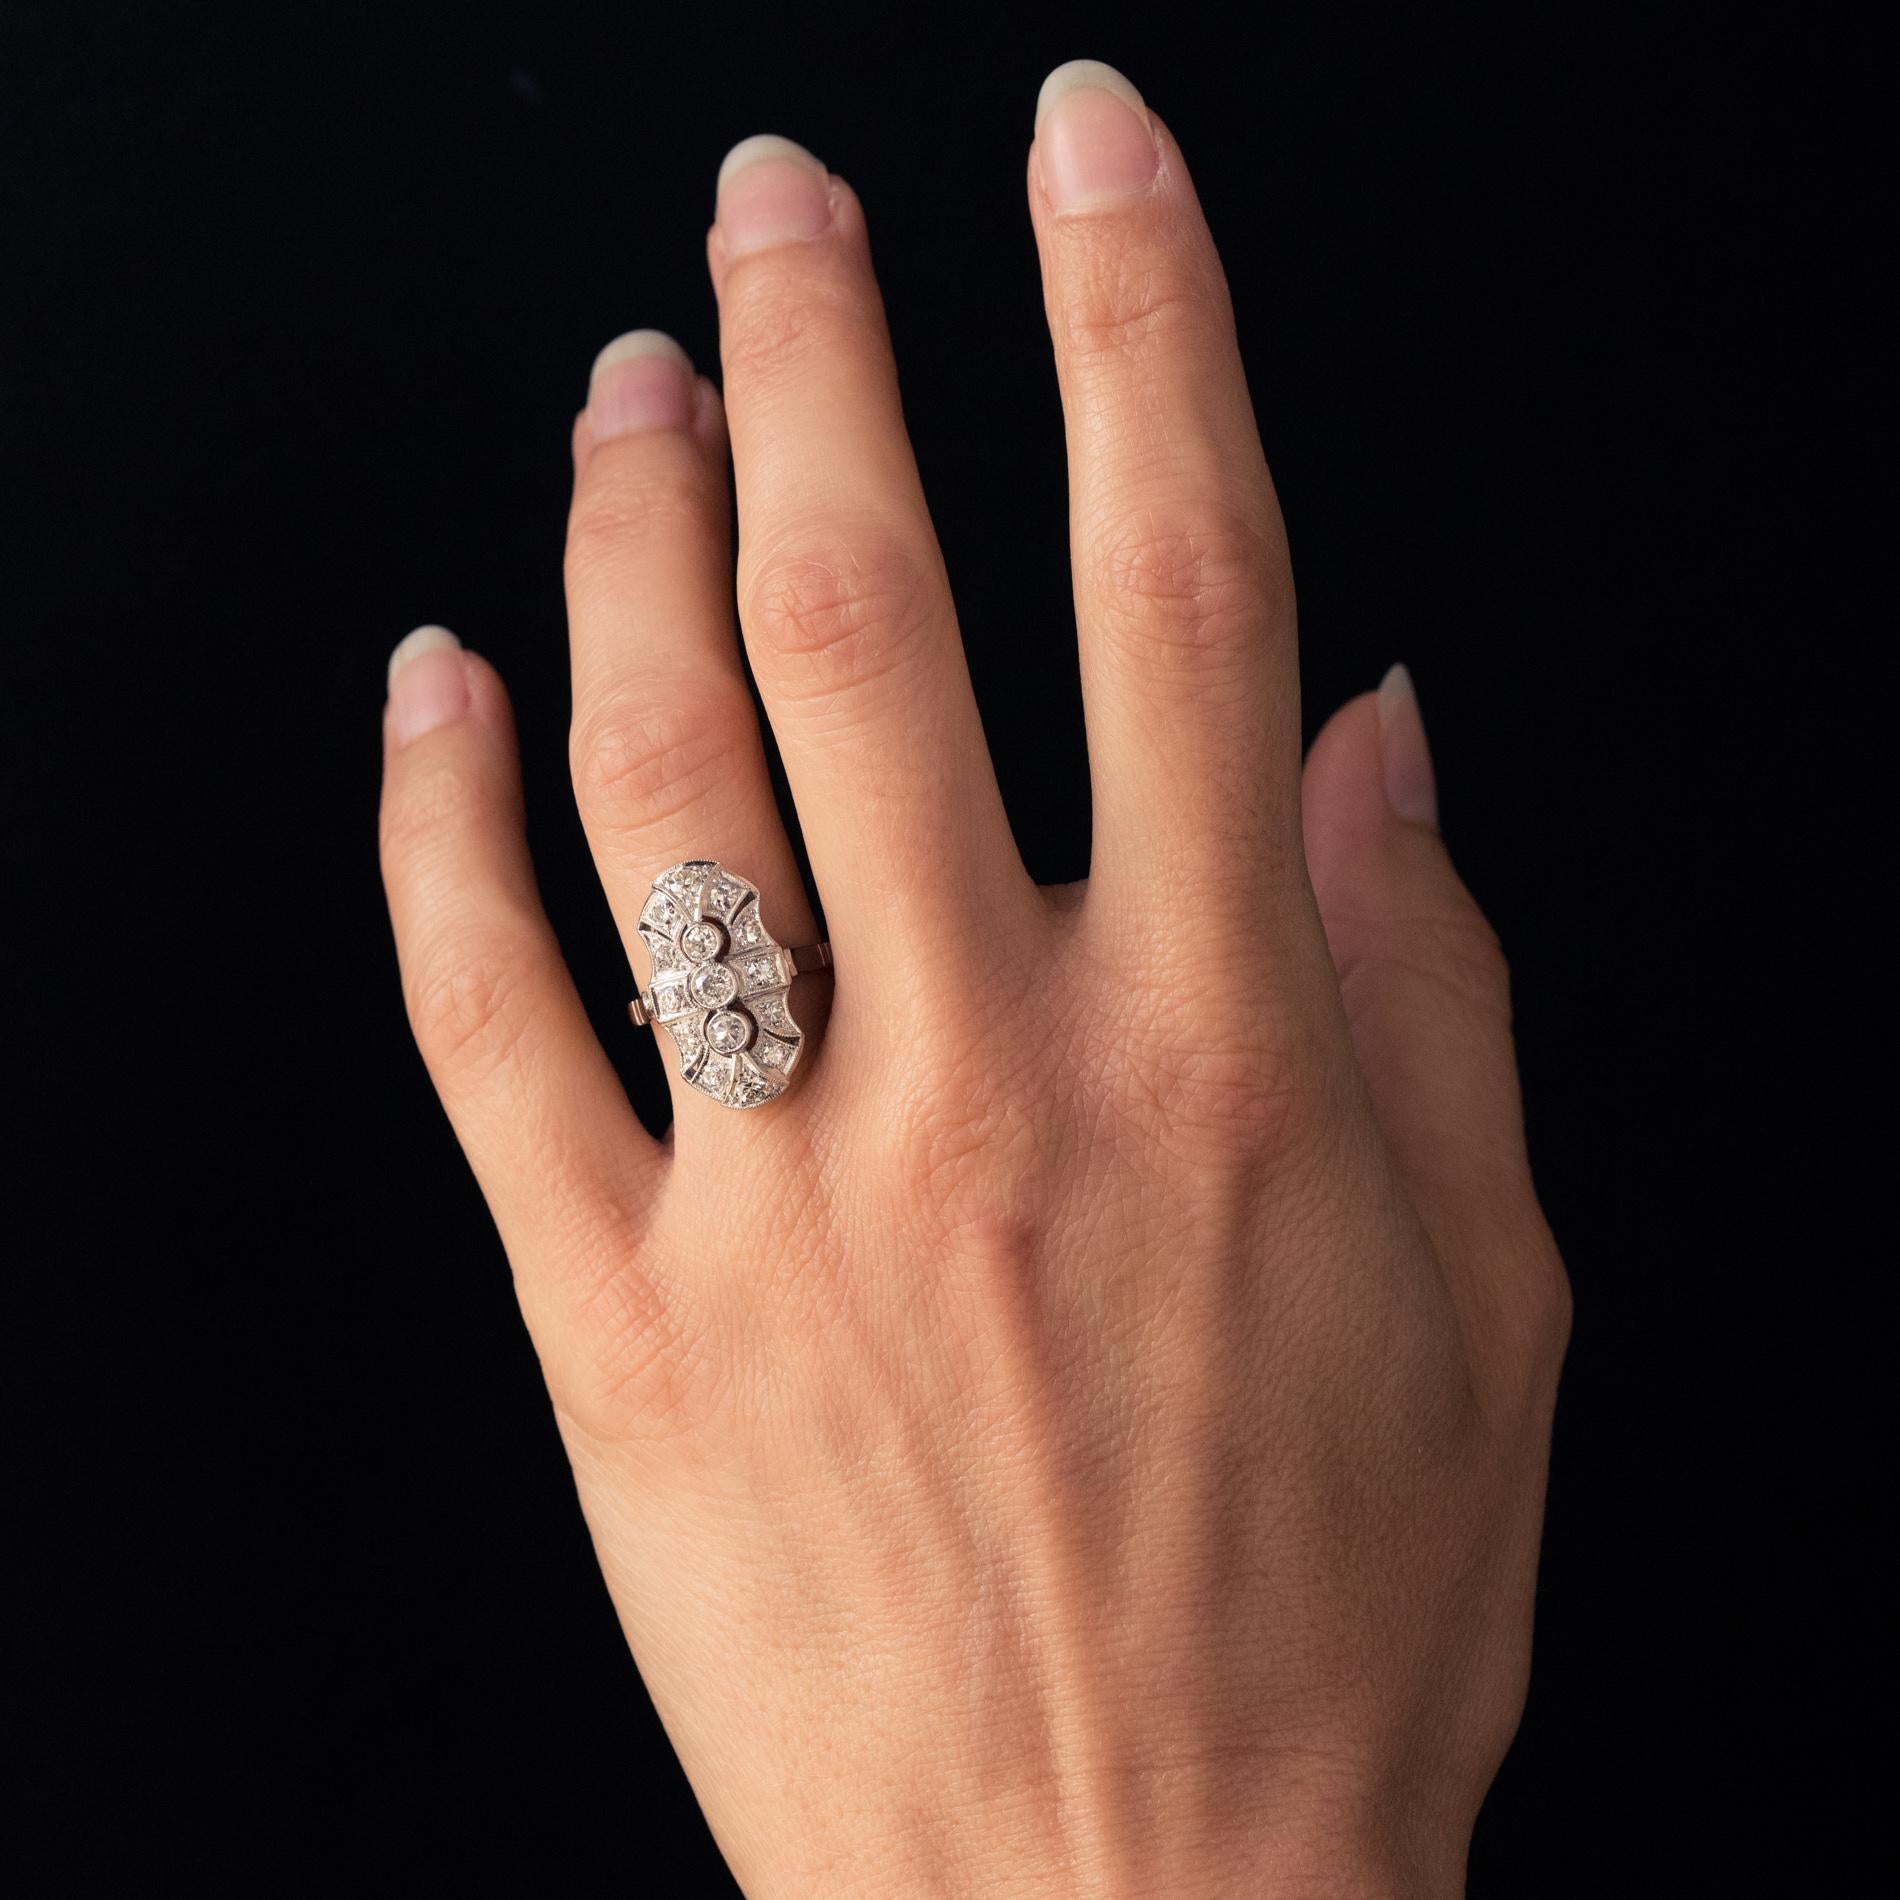 Ring aus 18 Karat Weißgold, Eulenpunze.
Inspiriert von den Linien und Techniken des Art Déco, ist dieser reizvolle Ring mit 3 Brillanten in einer durchbrochenen, ziselierten und eleganten Verzierung in Millegrain-Fassung besetzt. Die Fassung ist